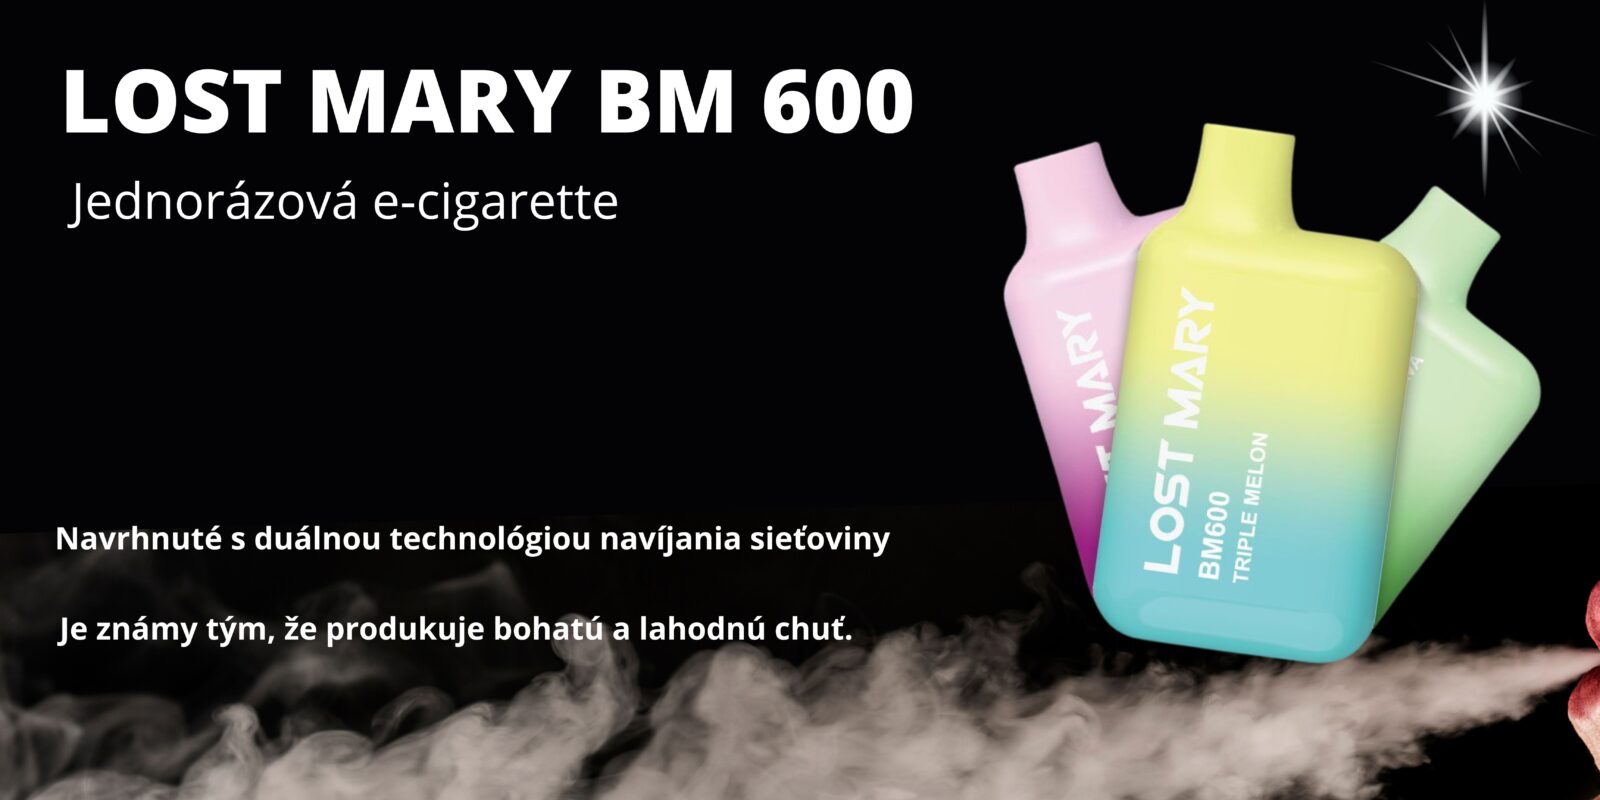 Lost Mary BM600 – Pineapple Ice (Jednorazová e-cigareta) 20MG JEDNORAZOVÉ E-CIGARETY - XMANIA Ireland 16